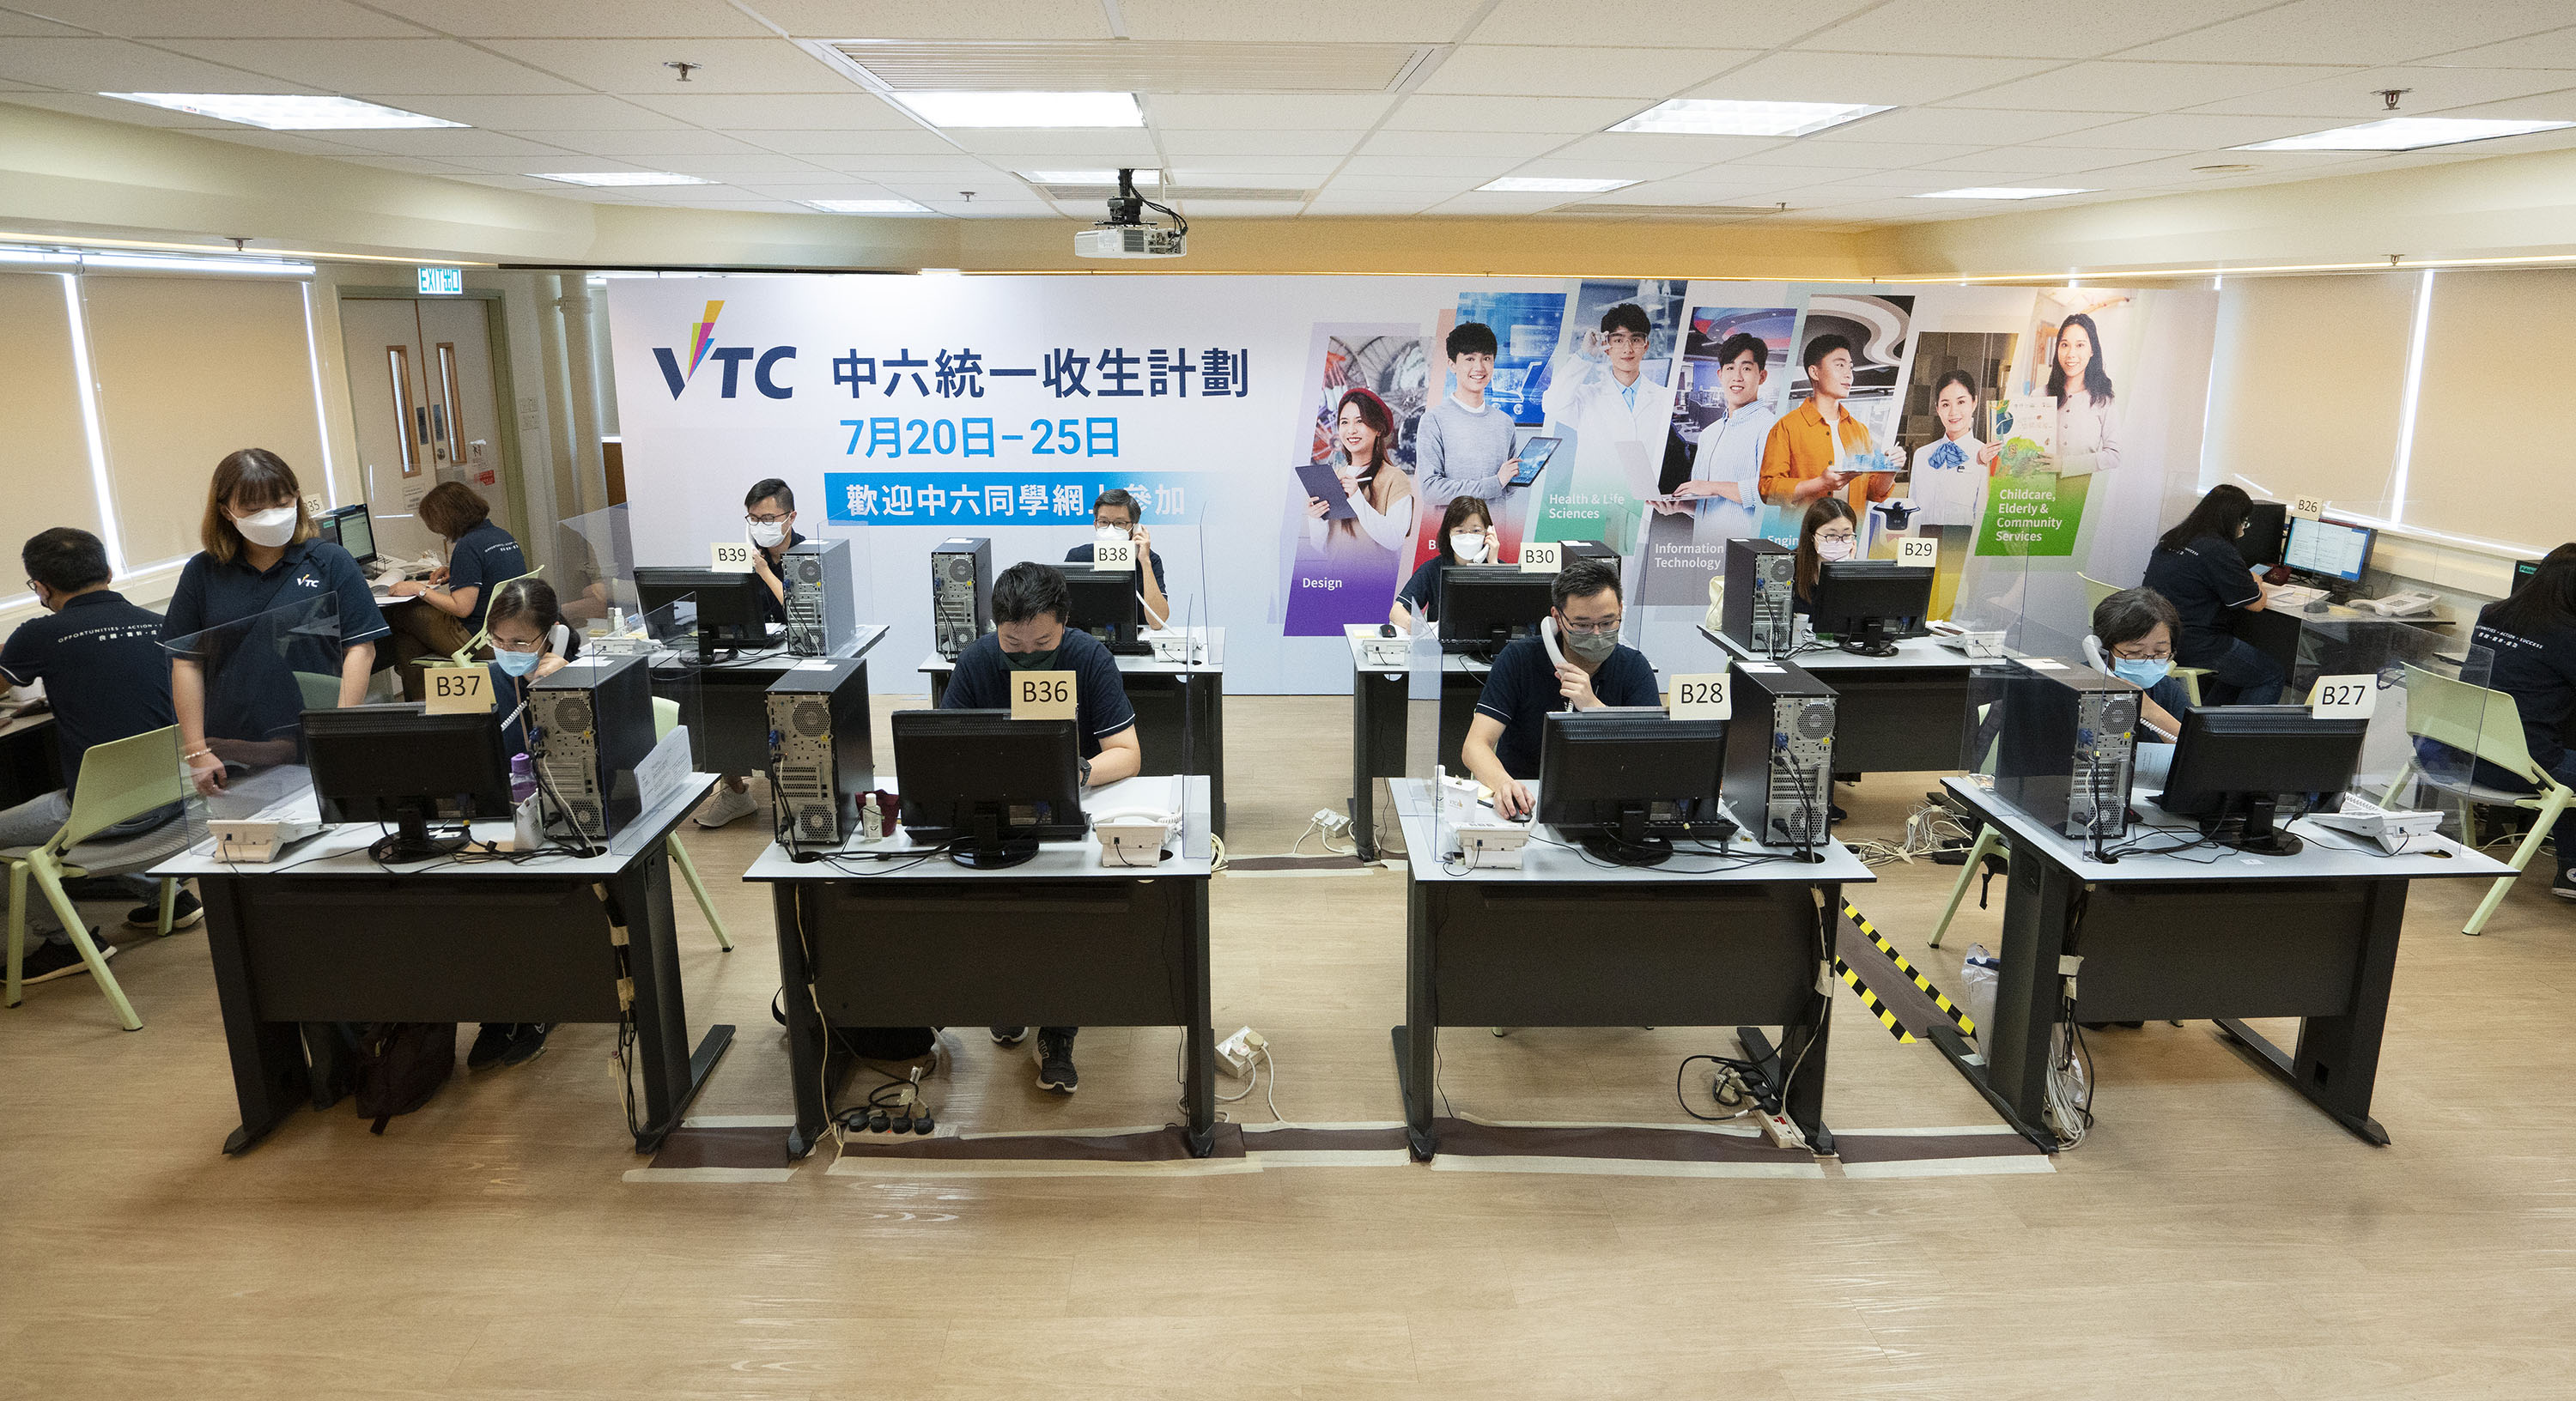 VTC統一收生計劃 歡迎文憑試考生報讀心儀課程